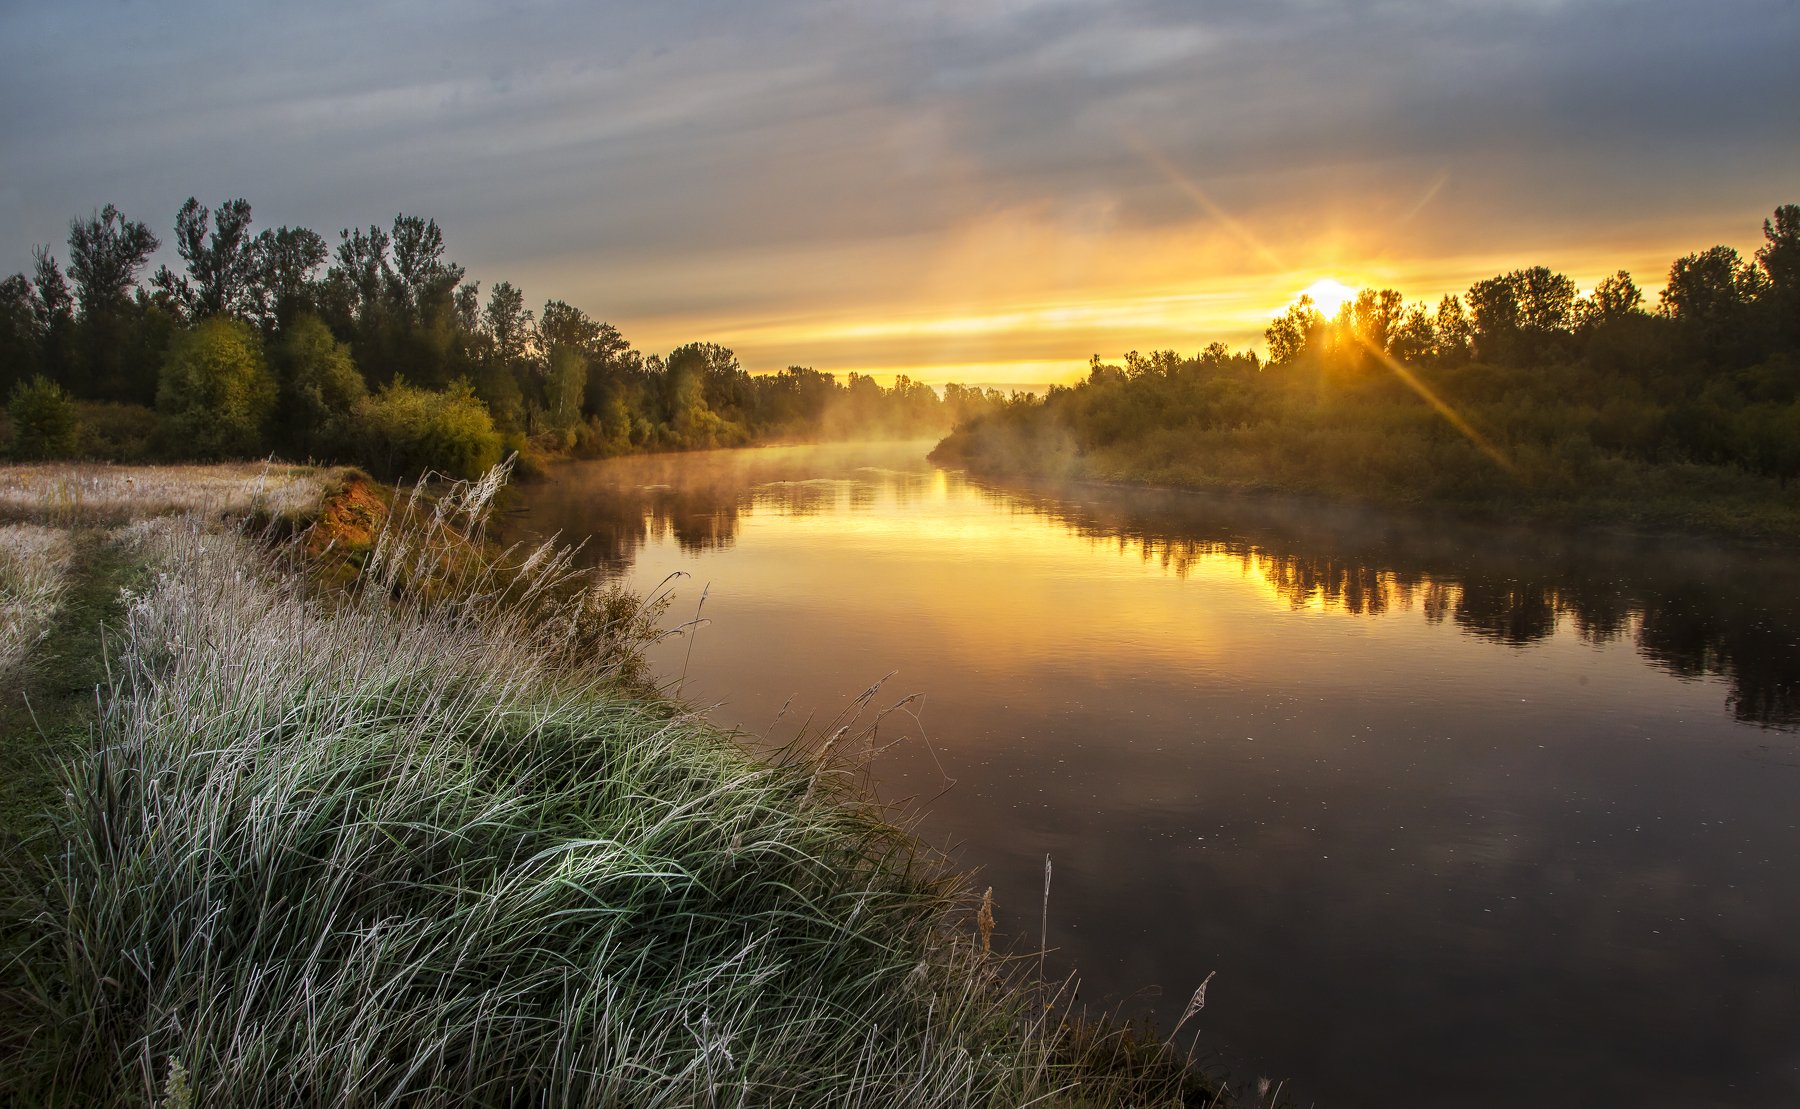 Кильмезь, река, утро, пейзаж, утренний пейзаж, туман, восход солнца, восход, иней, Сентябрь, Vyacheslav Lozhkin